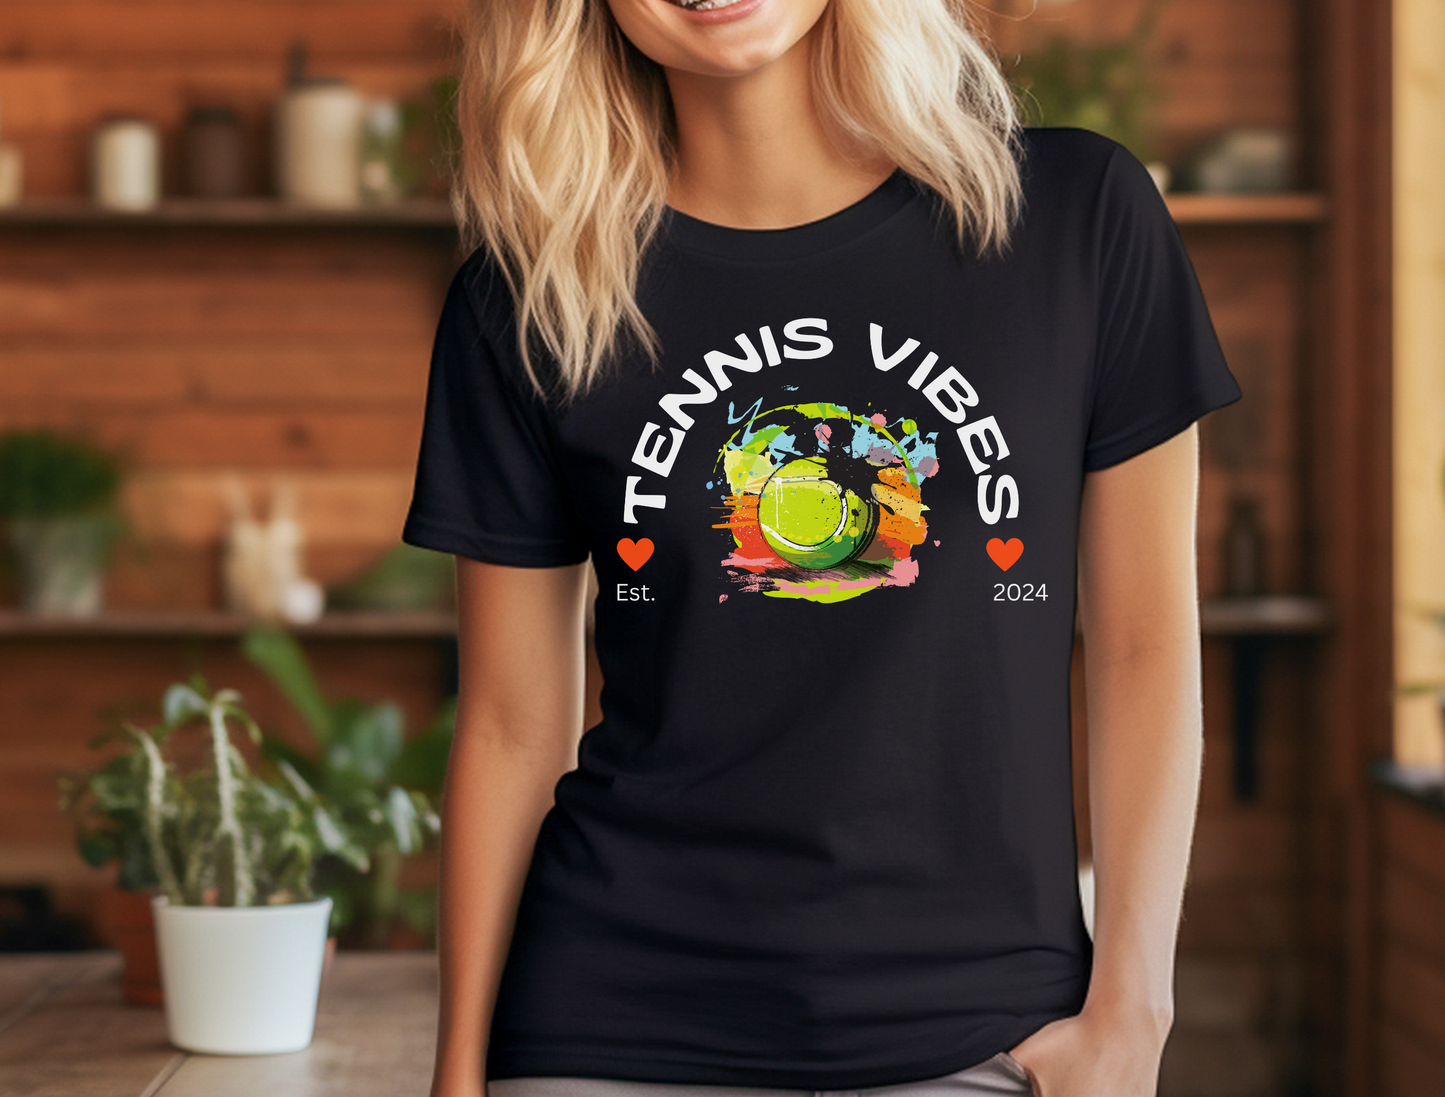 Tennis Vibes T-shirt